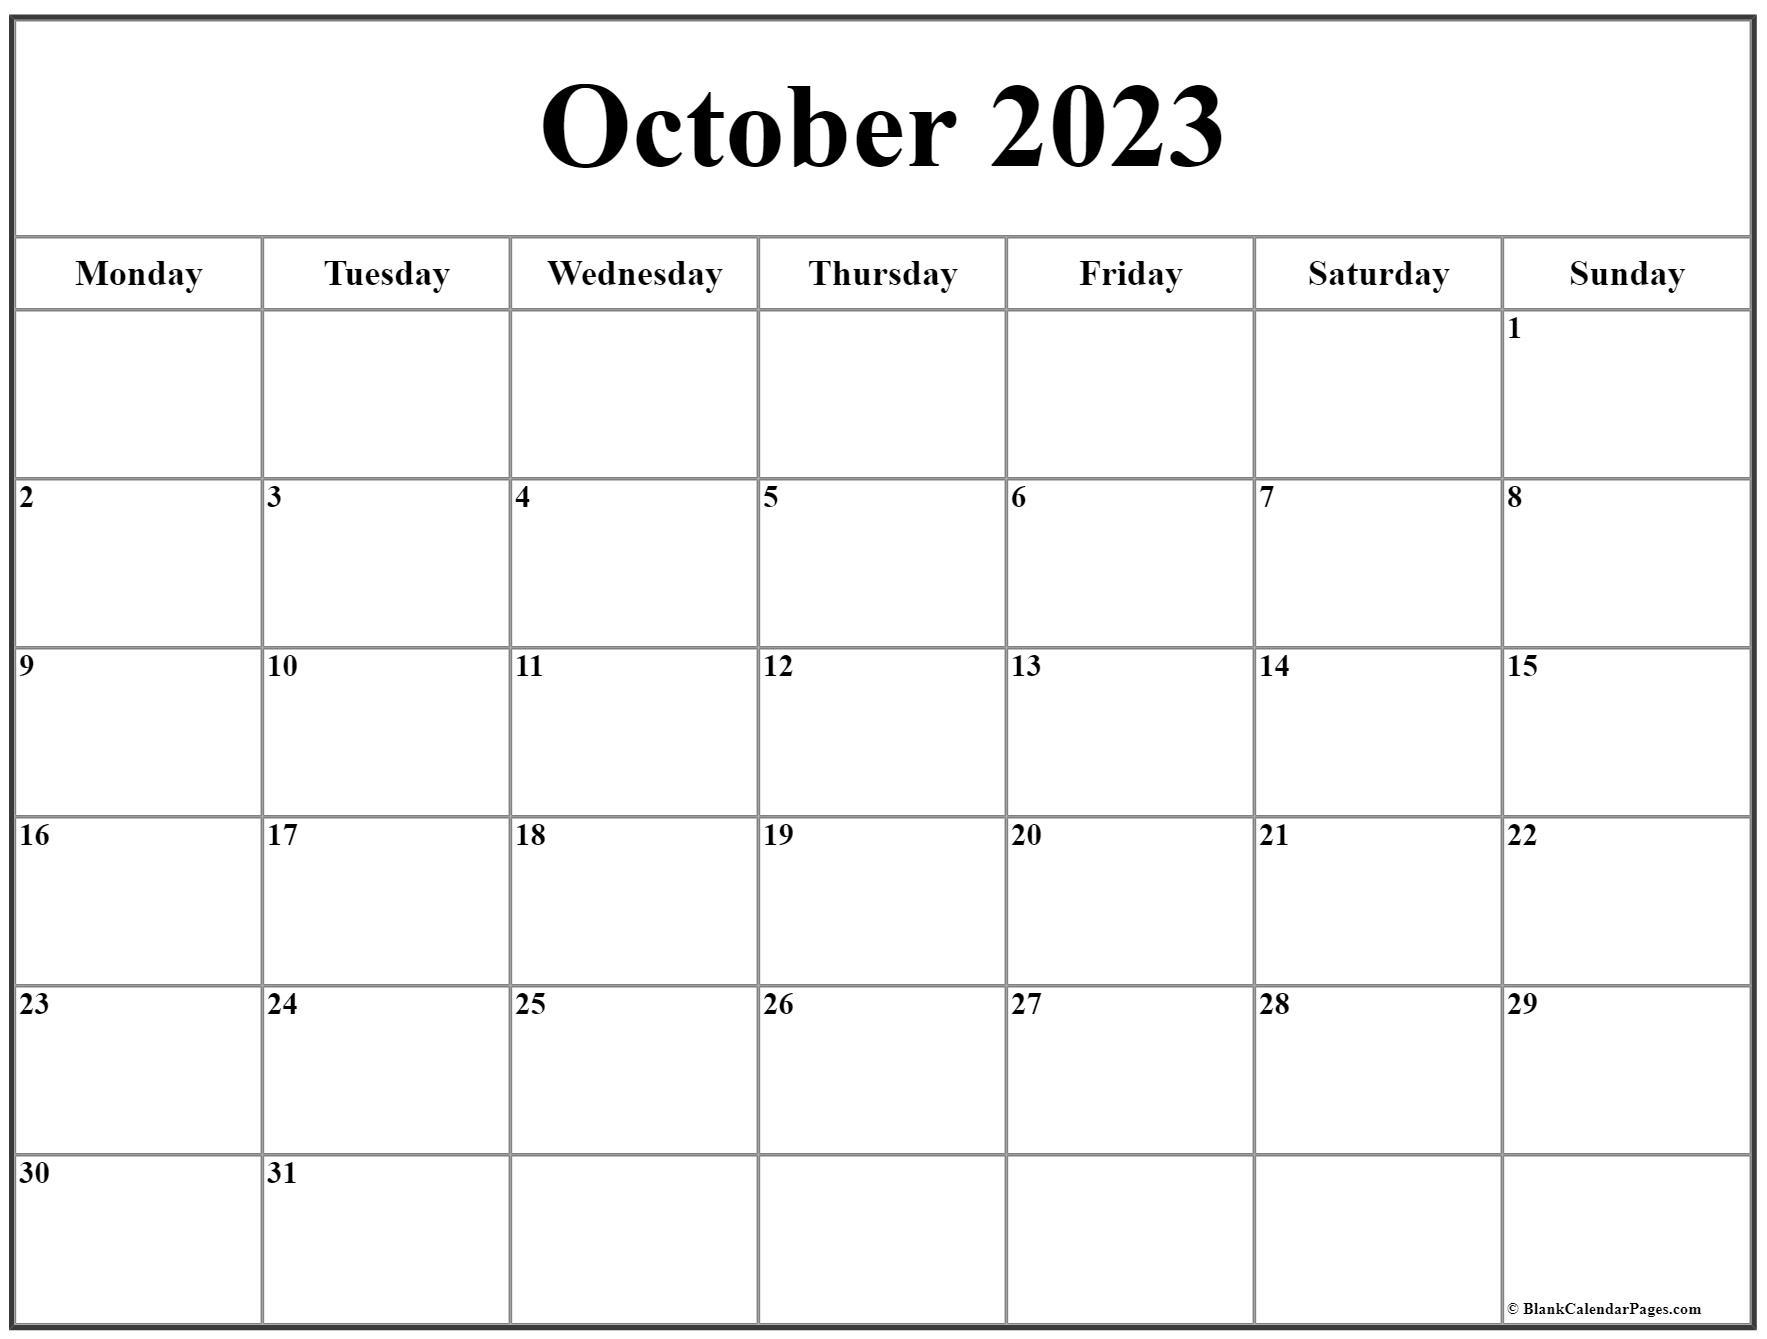 october-2023-calendar-free-printable-calendar-october-2023-calendar-free-printable-calendar